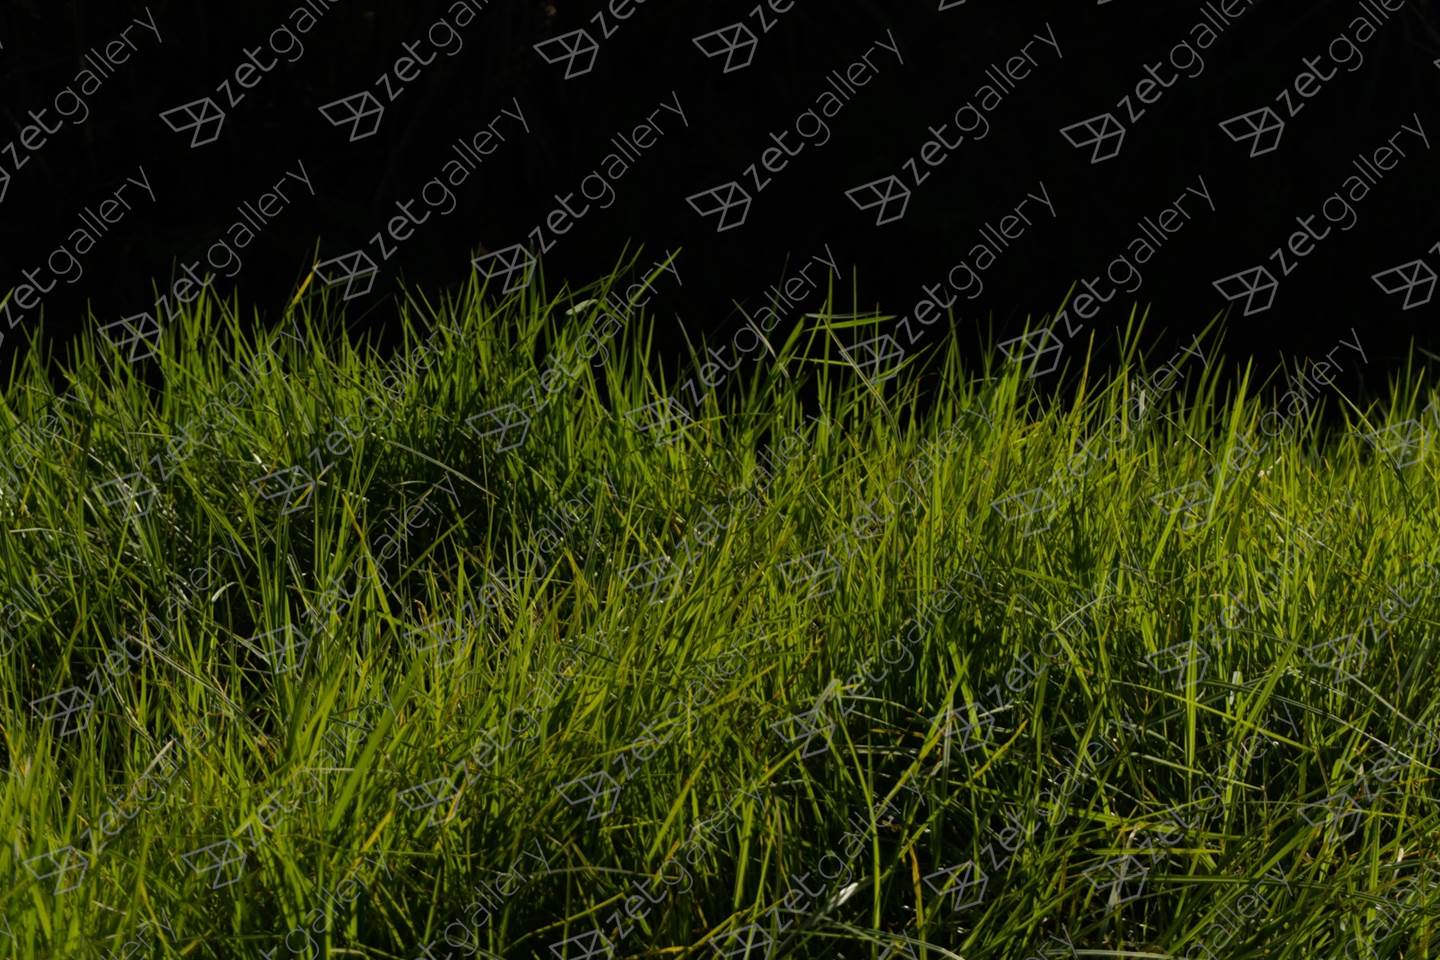 Grass for the rabbits, original Nature morte Numérique La photographie par Liliia Kucher